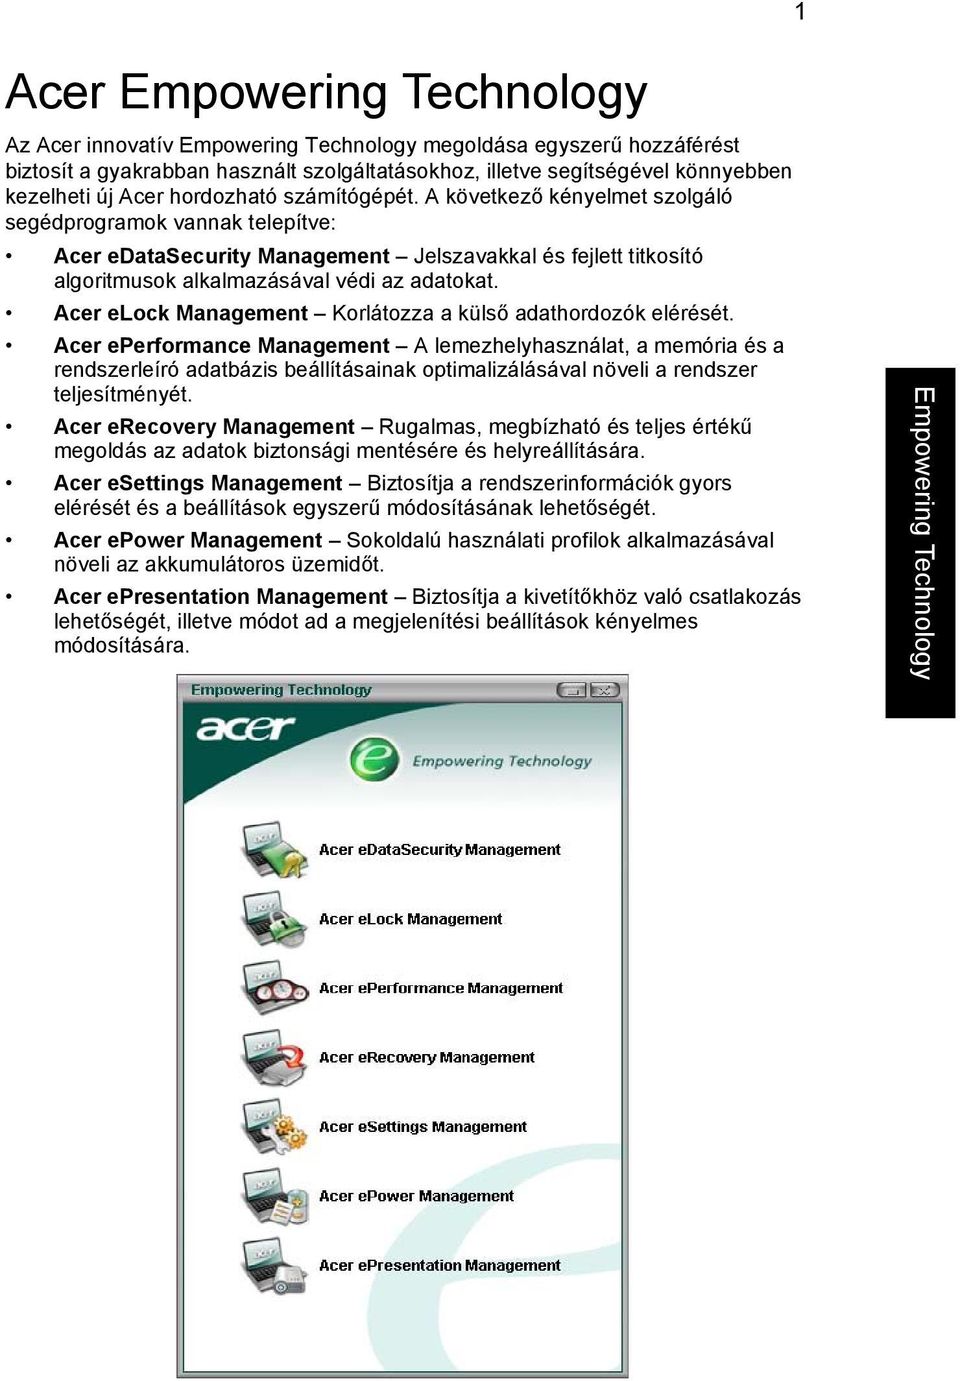 Acer elock Management Korlátozza a külső adathordozók elérését.